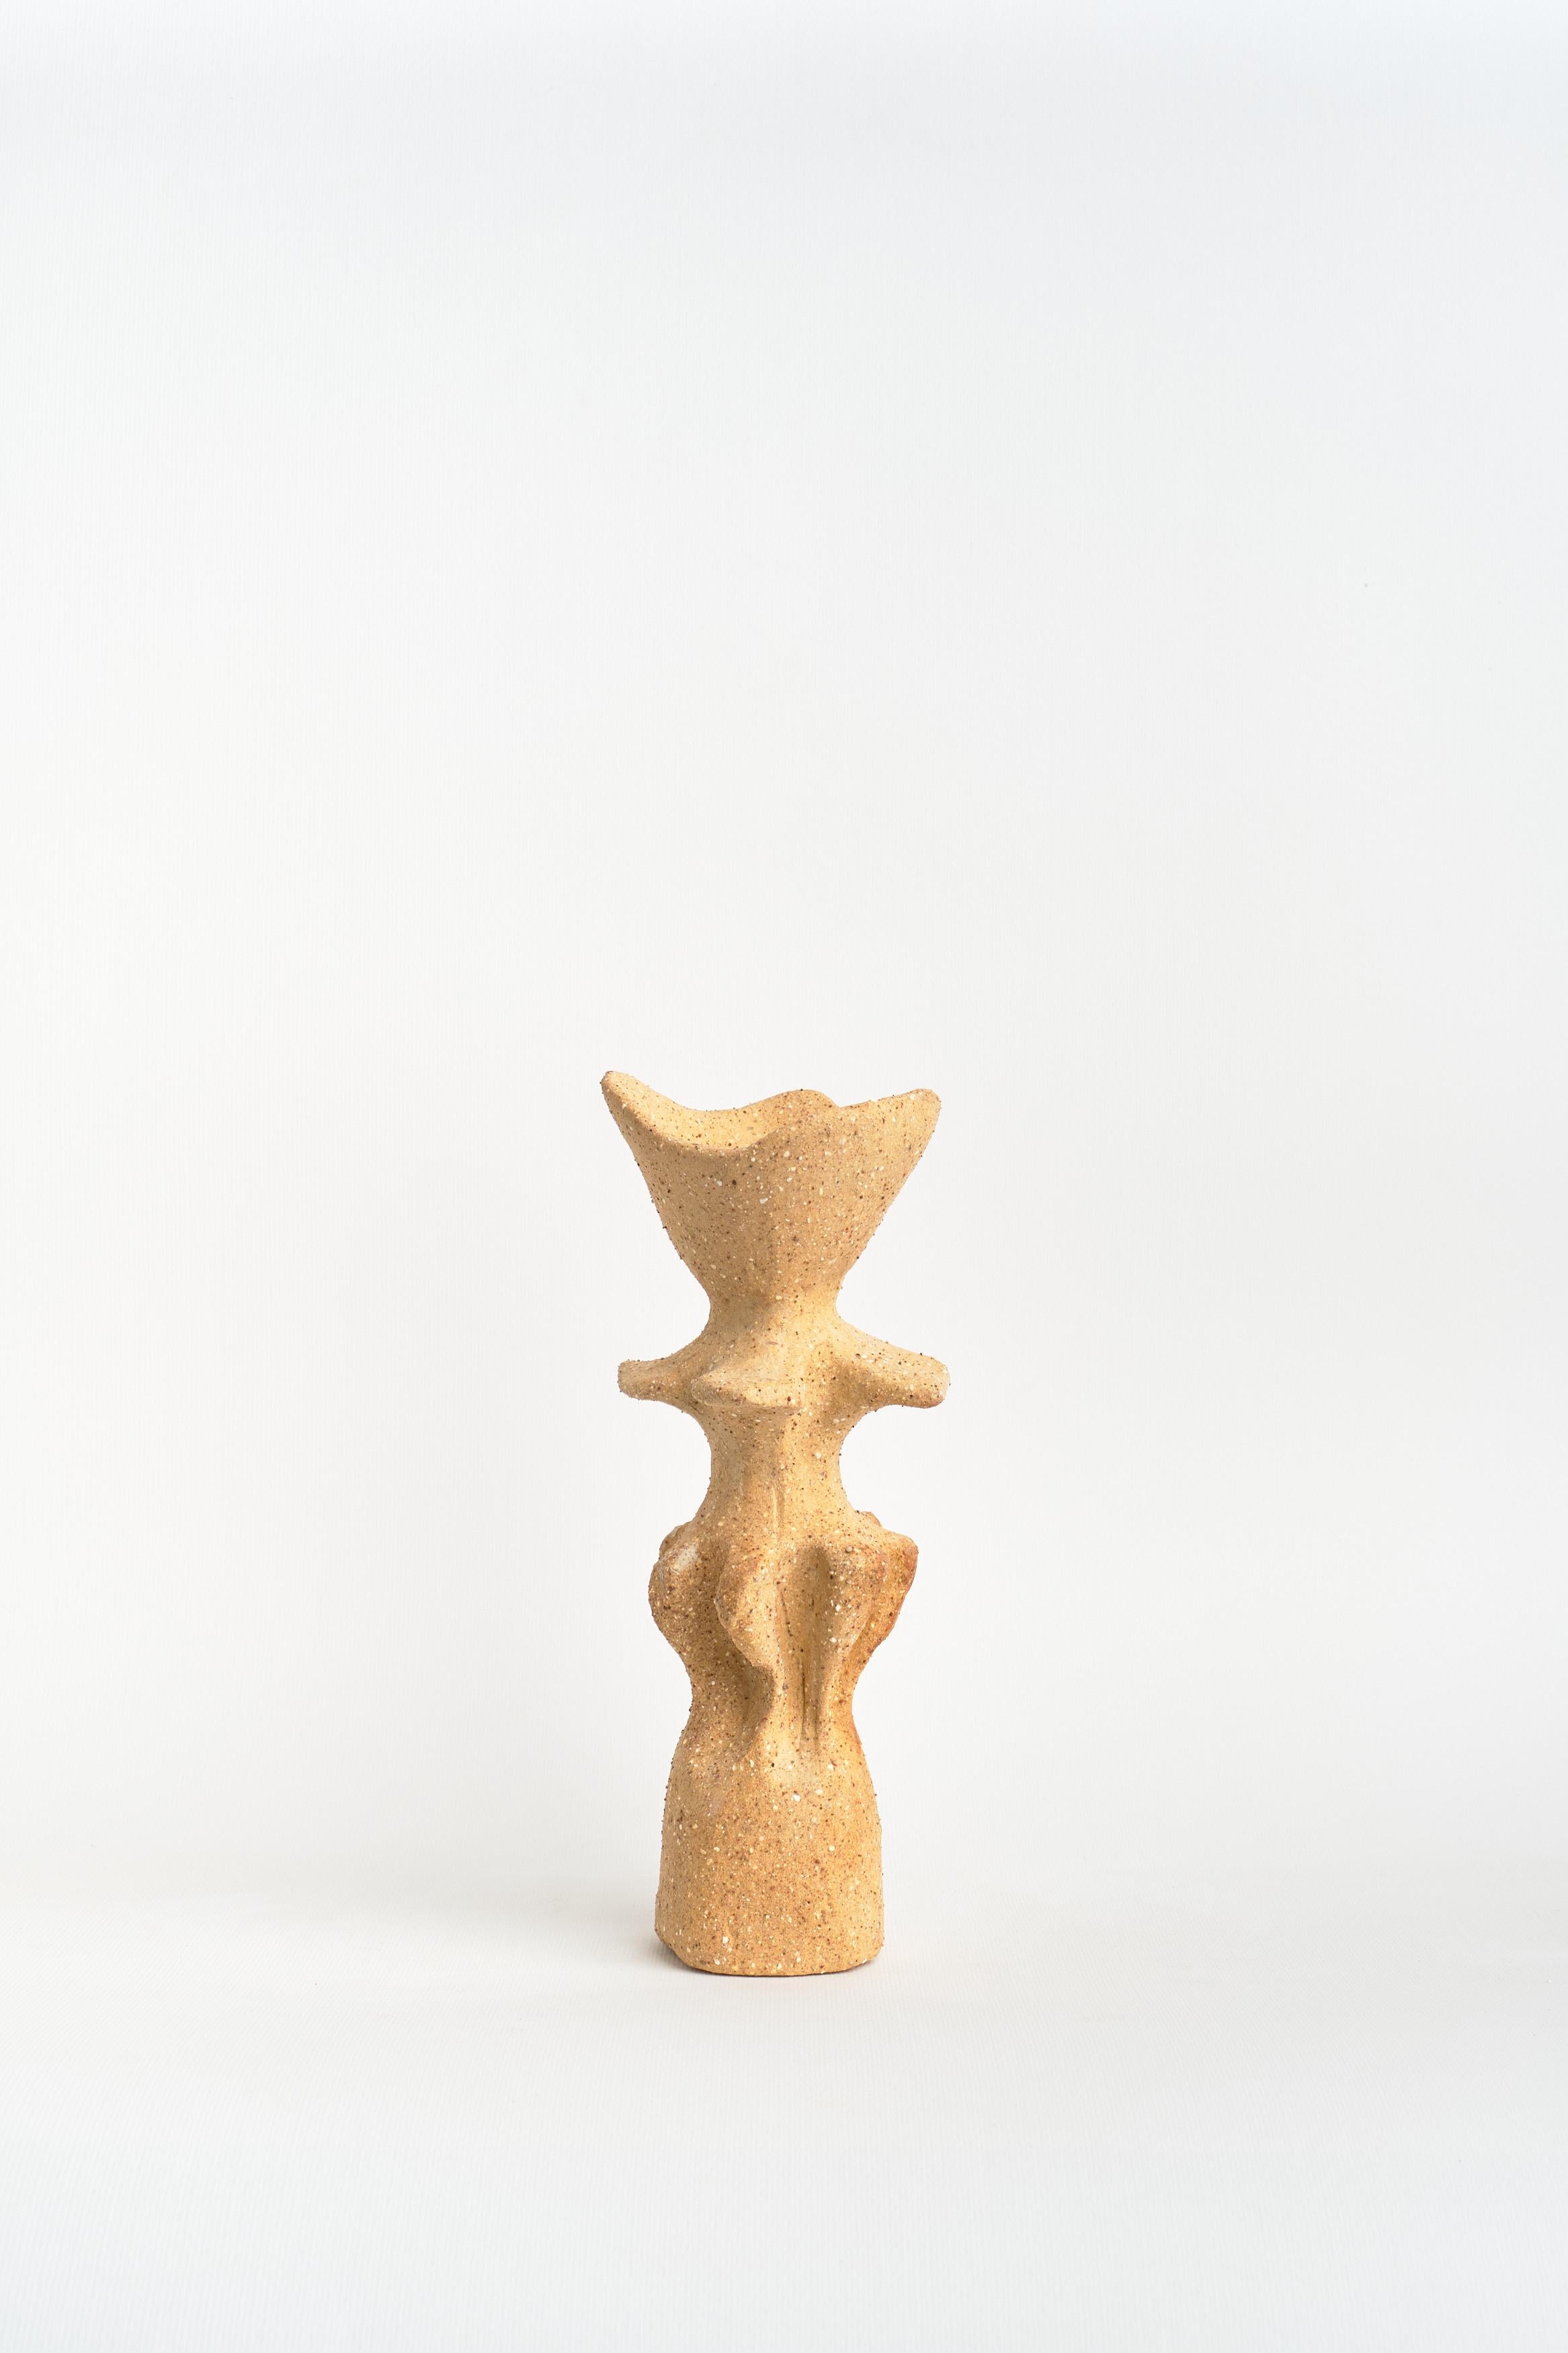 Kandelaber mit 3 Kerzenhaltern von Camila Apaez
Einzigartig
MATERIALIEN: Steinzeug, Rote Tonerde
Abmessungen: ⌀ 7 x H 20 cm

Ila Ceramica ist aus einem Prozess der inneren Suche entstanden, in dem die Keramik zu einem Raum für Präsenz, Stille,